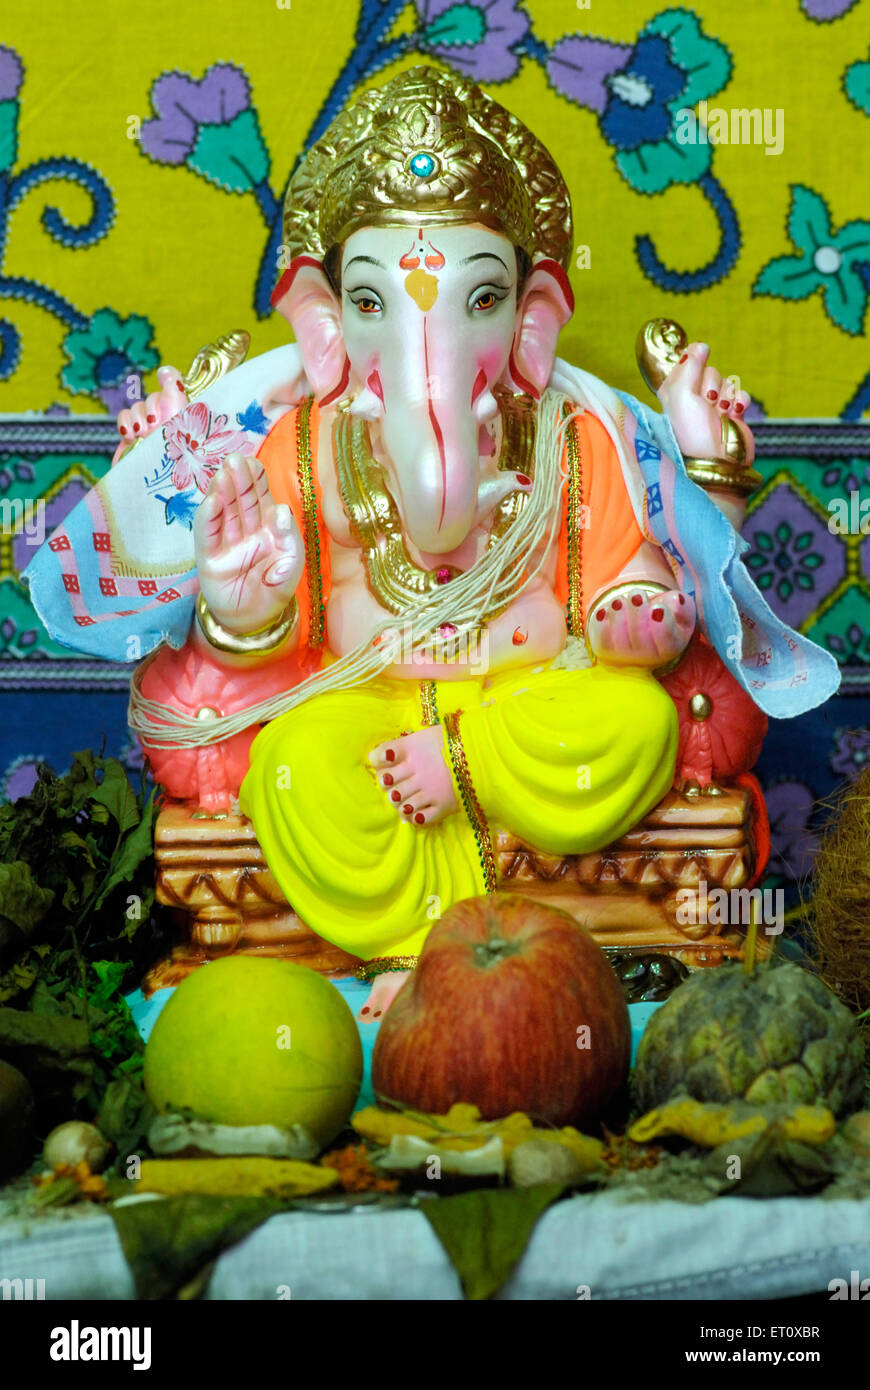 Reich verzierte Idol von Lord Ganesh Elefant ging Gott; Ganapati Festivaljahr 2008 in Pune; Maharashtra; Indien Stockfoto